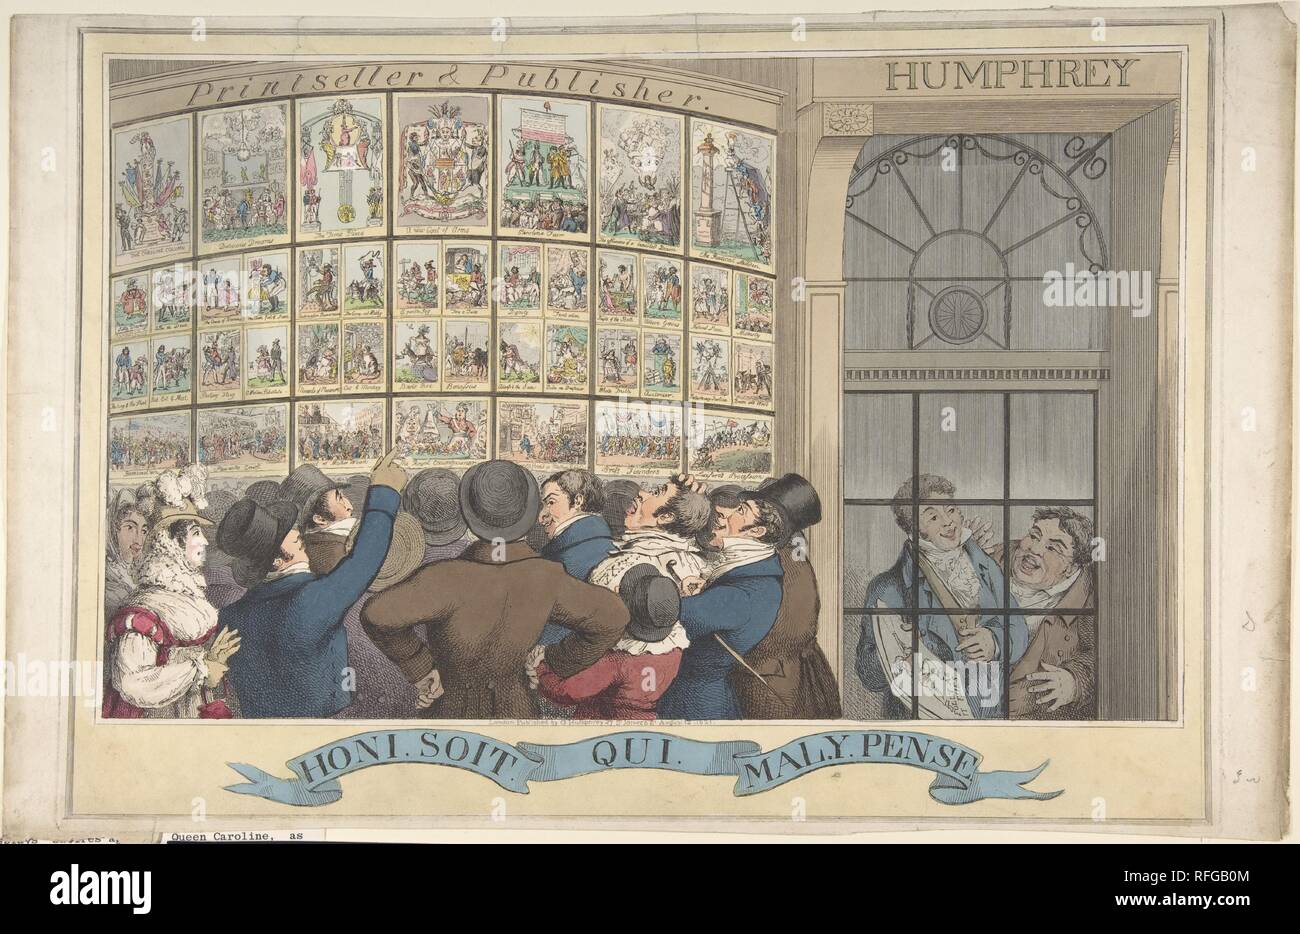 Choni. Soi. Qui. Mal. Y Pense: Die Karikatur Shop von G. Humphrey, 27 St. James's Street, London. Artist: Theodore Lane (Briten, Isleworth Ca. 1800-1828 London). Abmessungen: Platte: 11 13/16 x 16 7/8 in. (30 x 42,8 cm) Blatt: 11 7/8 x 18 9/16 in. (30,2 x 47,2 cm). Herausgeber: Veröffentlicht in London von George Humphrey (British, 1773?-?1831). Datum: August 12, 1821. Eine Masse von Ungestümen Londonern gezeigt Inspektion Satiren kritische von Königin Caroline, die Frau des vor kurzem gekrönten König George IV. Diese werden angezeigt, in der Bow-front Schaufenster von George Humphrey, ein Verleger, der i Stockfoto